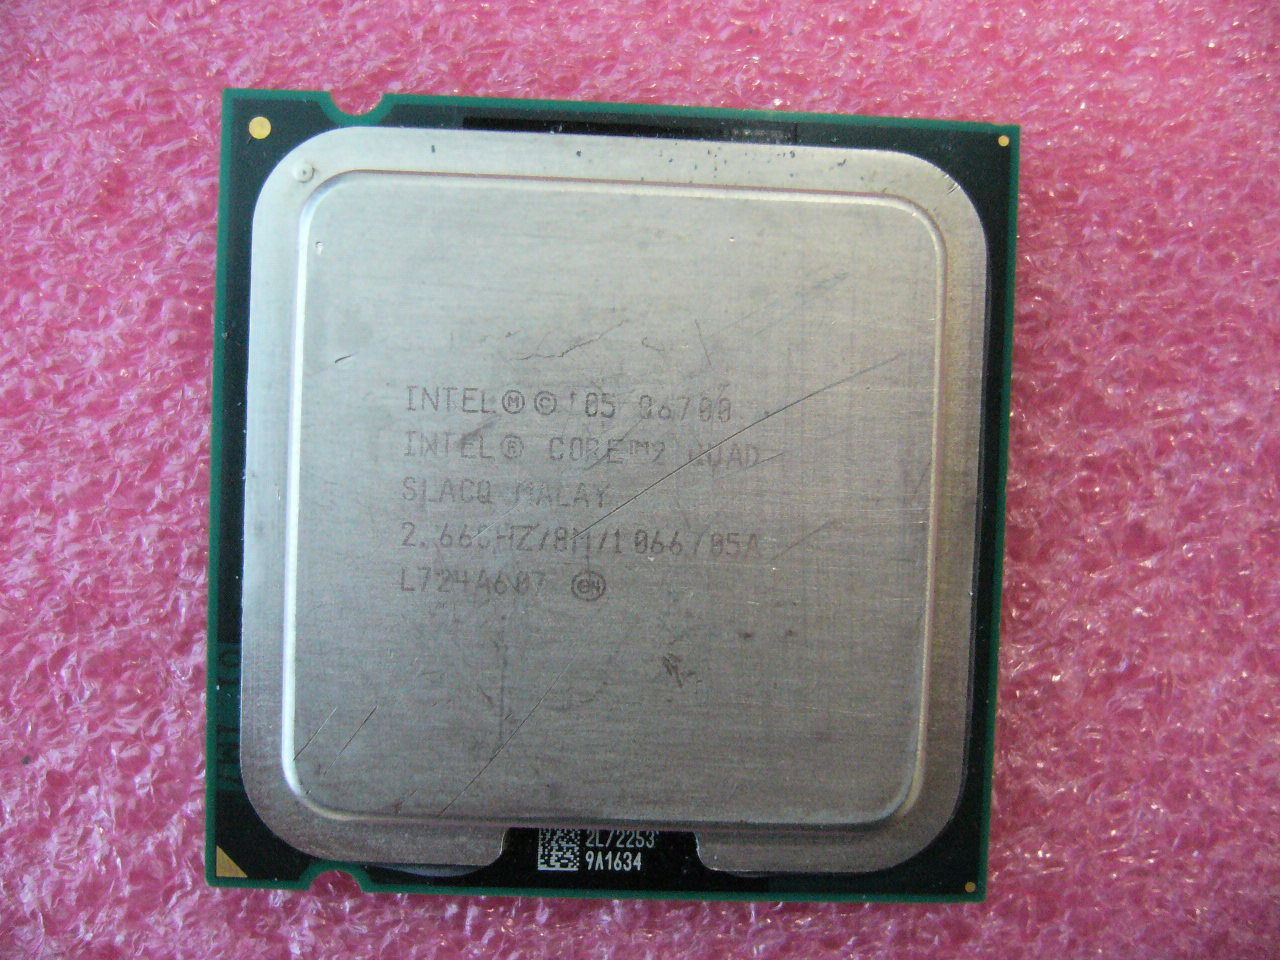 QTY 1x INTEL Core2 Quad Q6700 CPU 2.66GHz/8MB/1066Mhz LGA775 SLACQ - zum Schließen ins Bild klicken